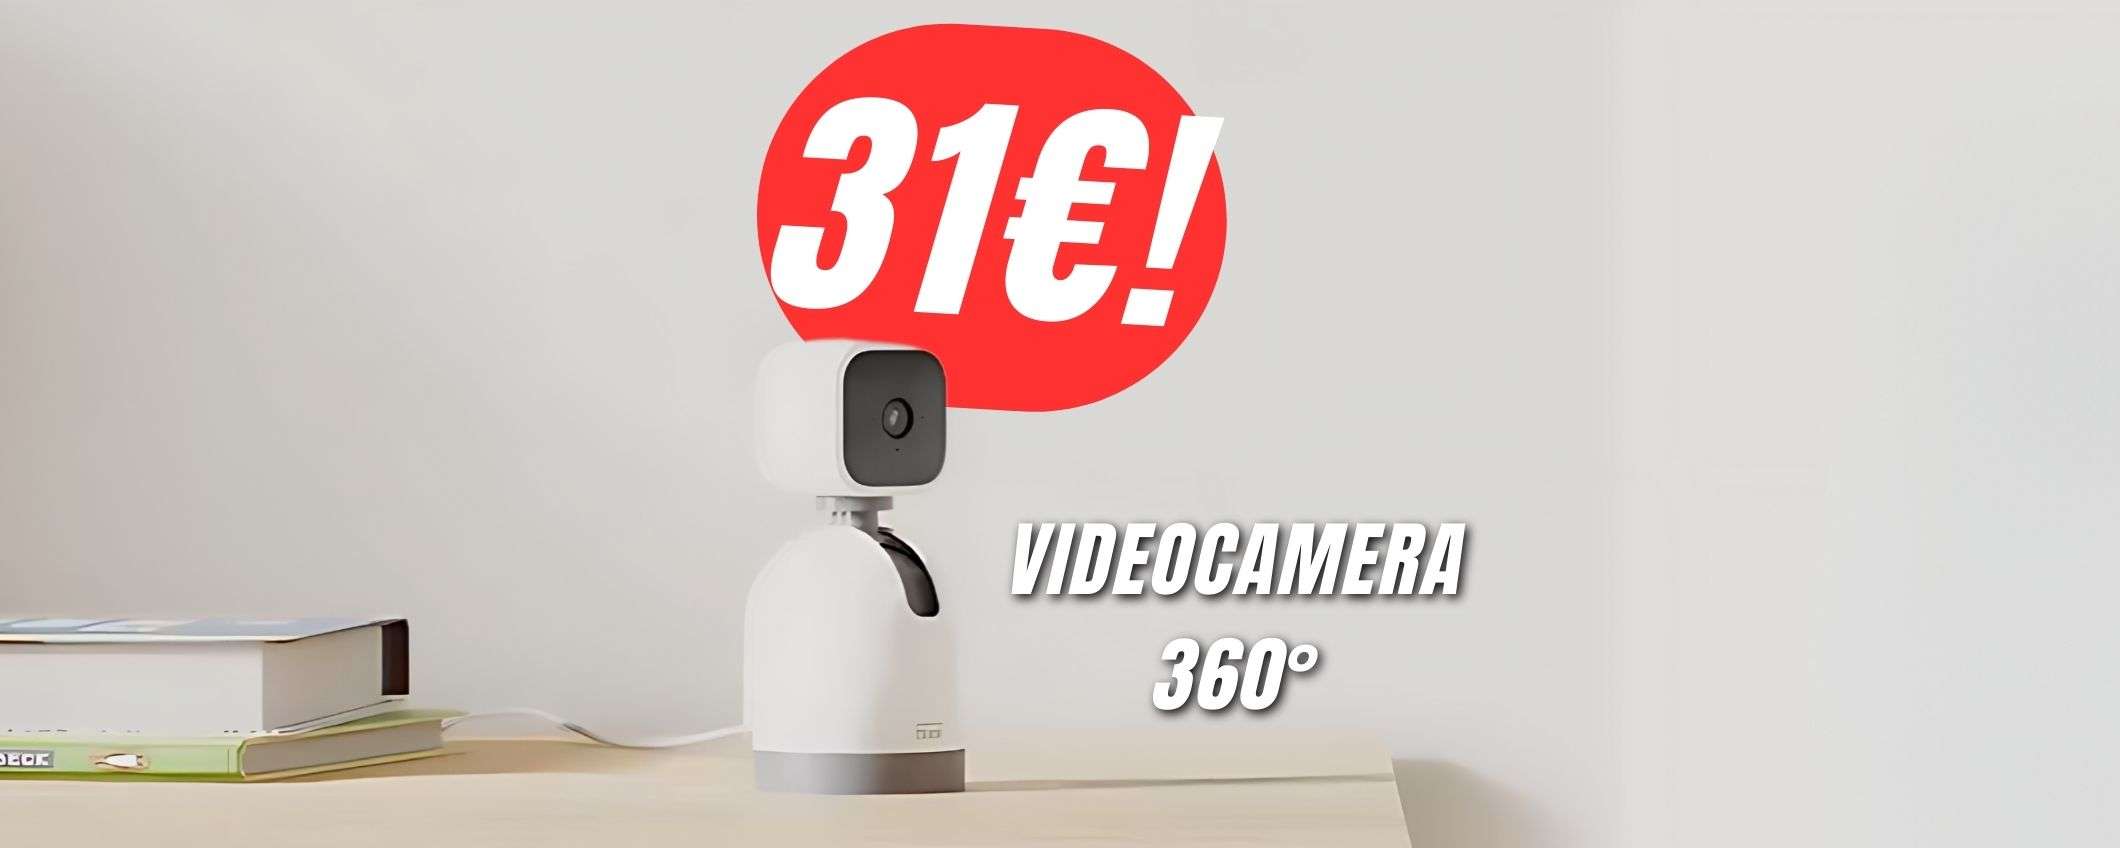 Controlla questa videocamera a 360° dal tuo smartphone (COSTA solo 31€!)